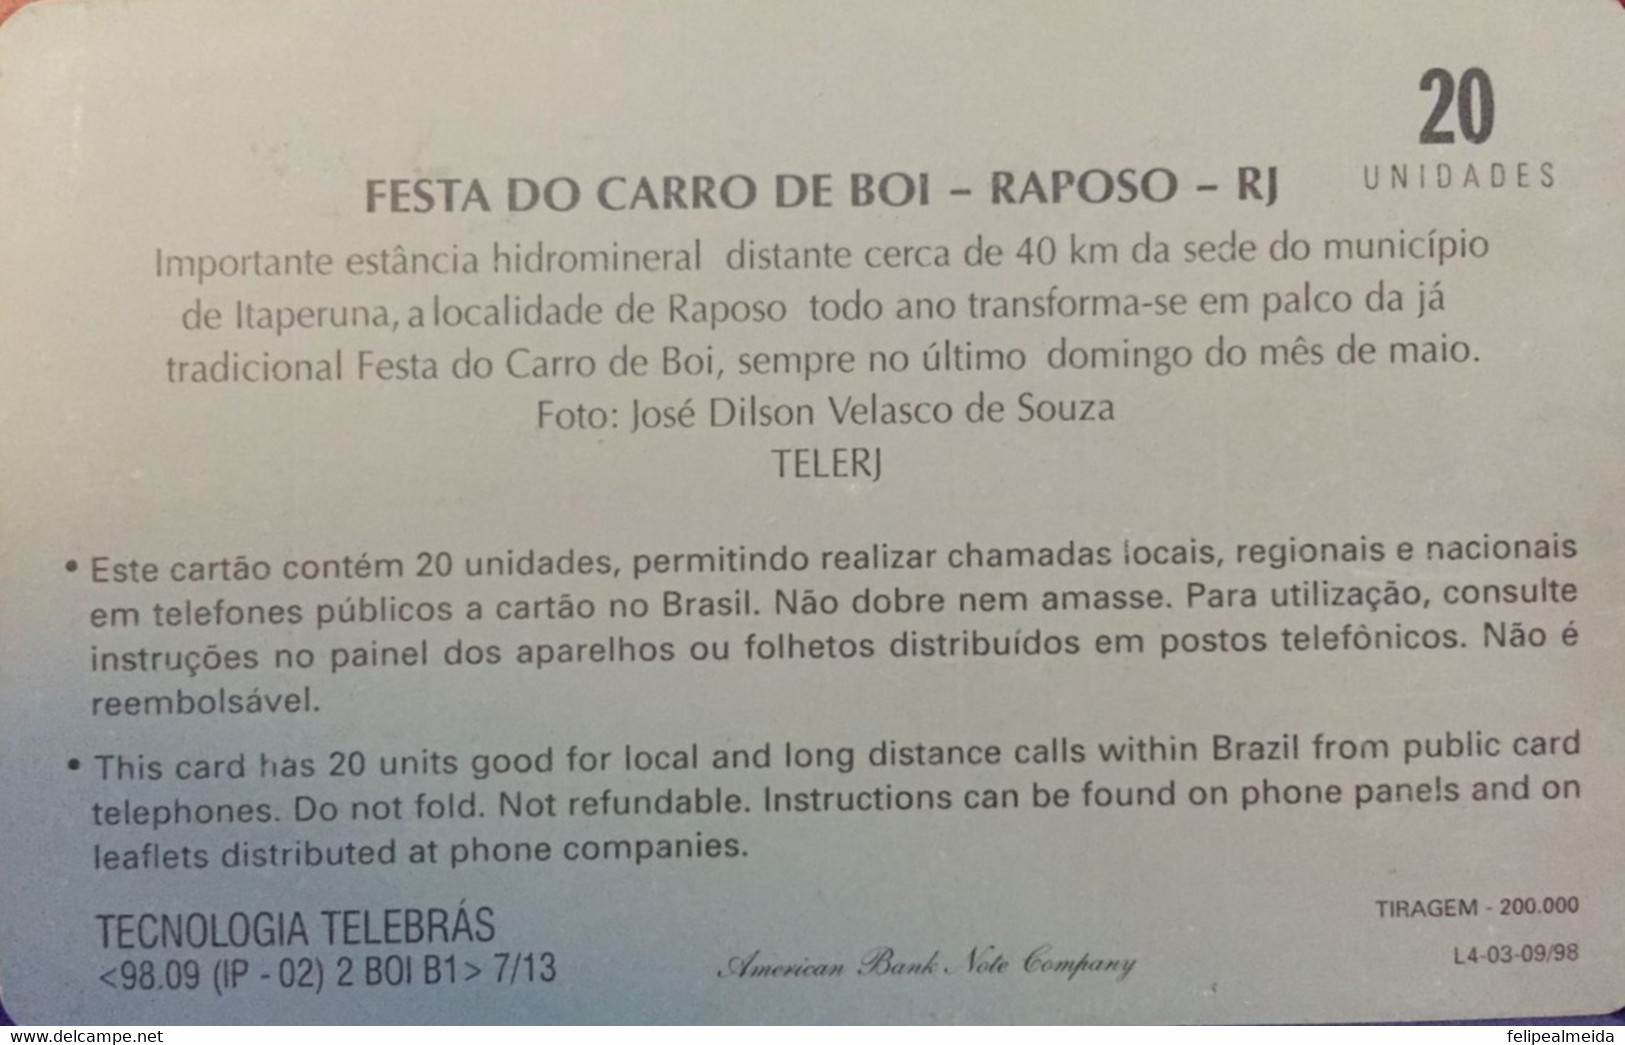 Phone Card Manufactured By Telerj In 1998 - Series Norte Fluminense - Festa Do Carro De Boi In Raposo - Rio De Janei - Culture